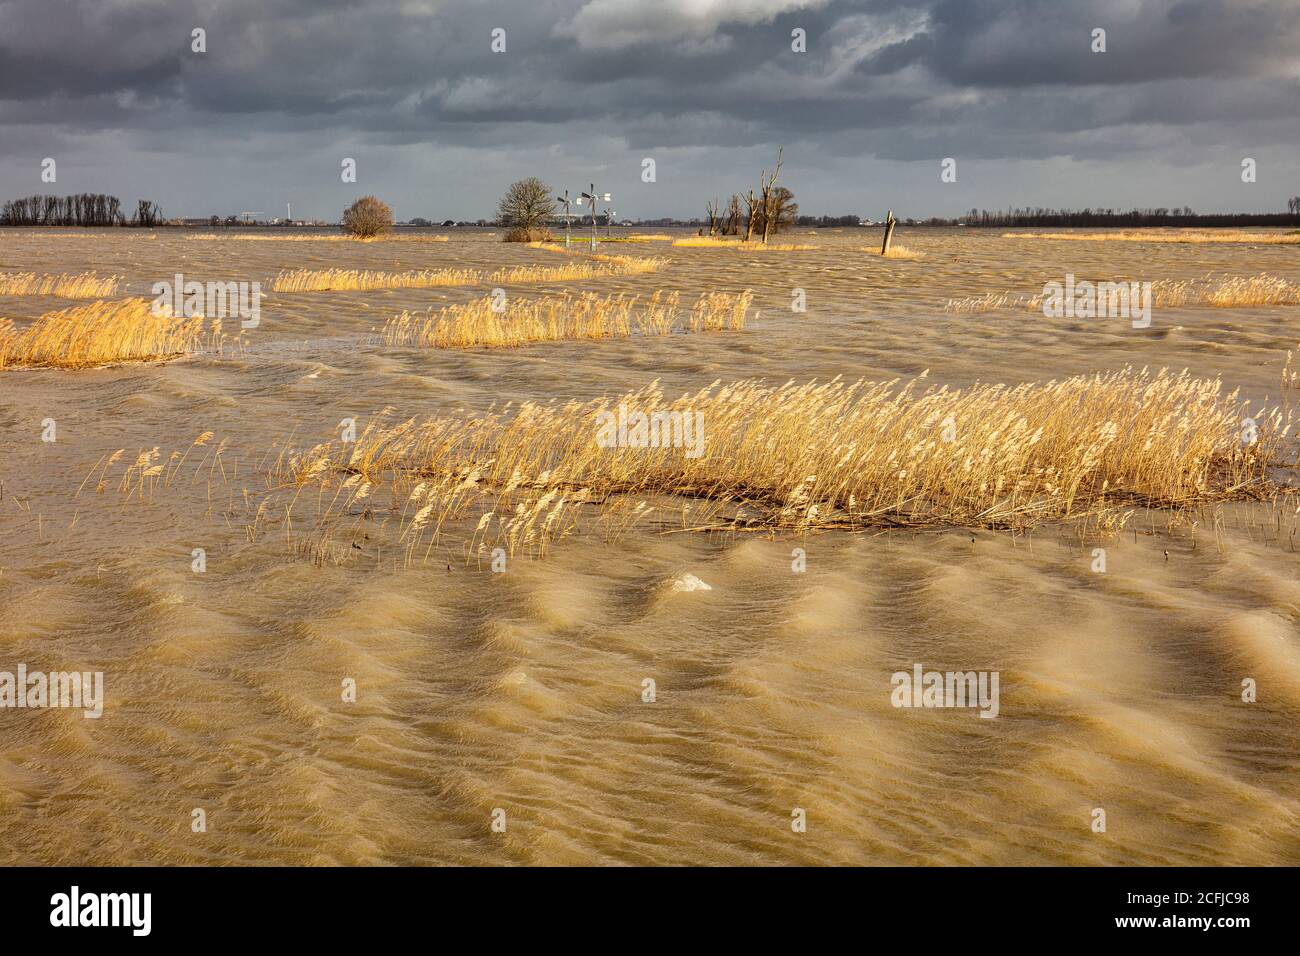 Niederlande, Werkendam, Nationalpark De Biesbosch. Absichtliche Überschwemmung des Polders Noordwaard. Raum für das River-Projekt. Stockfoto